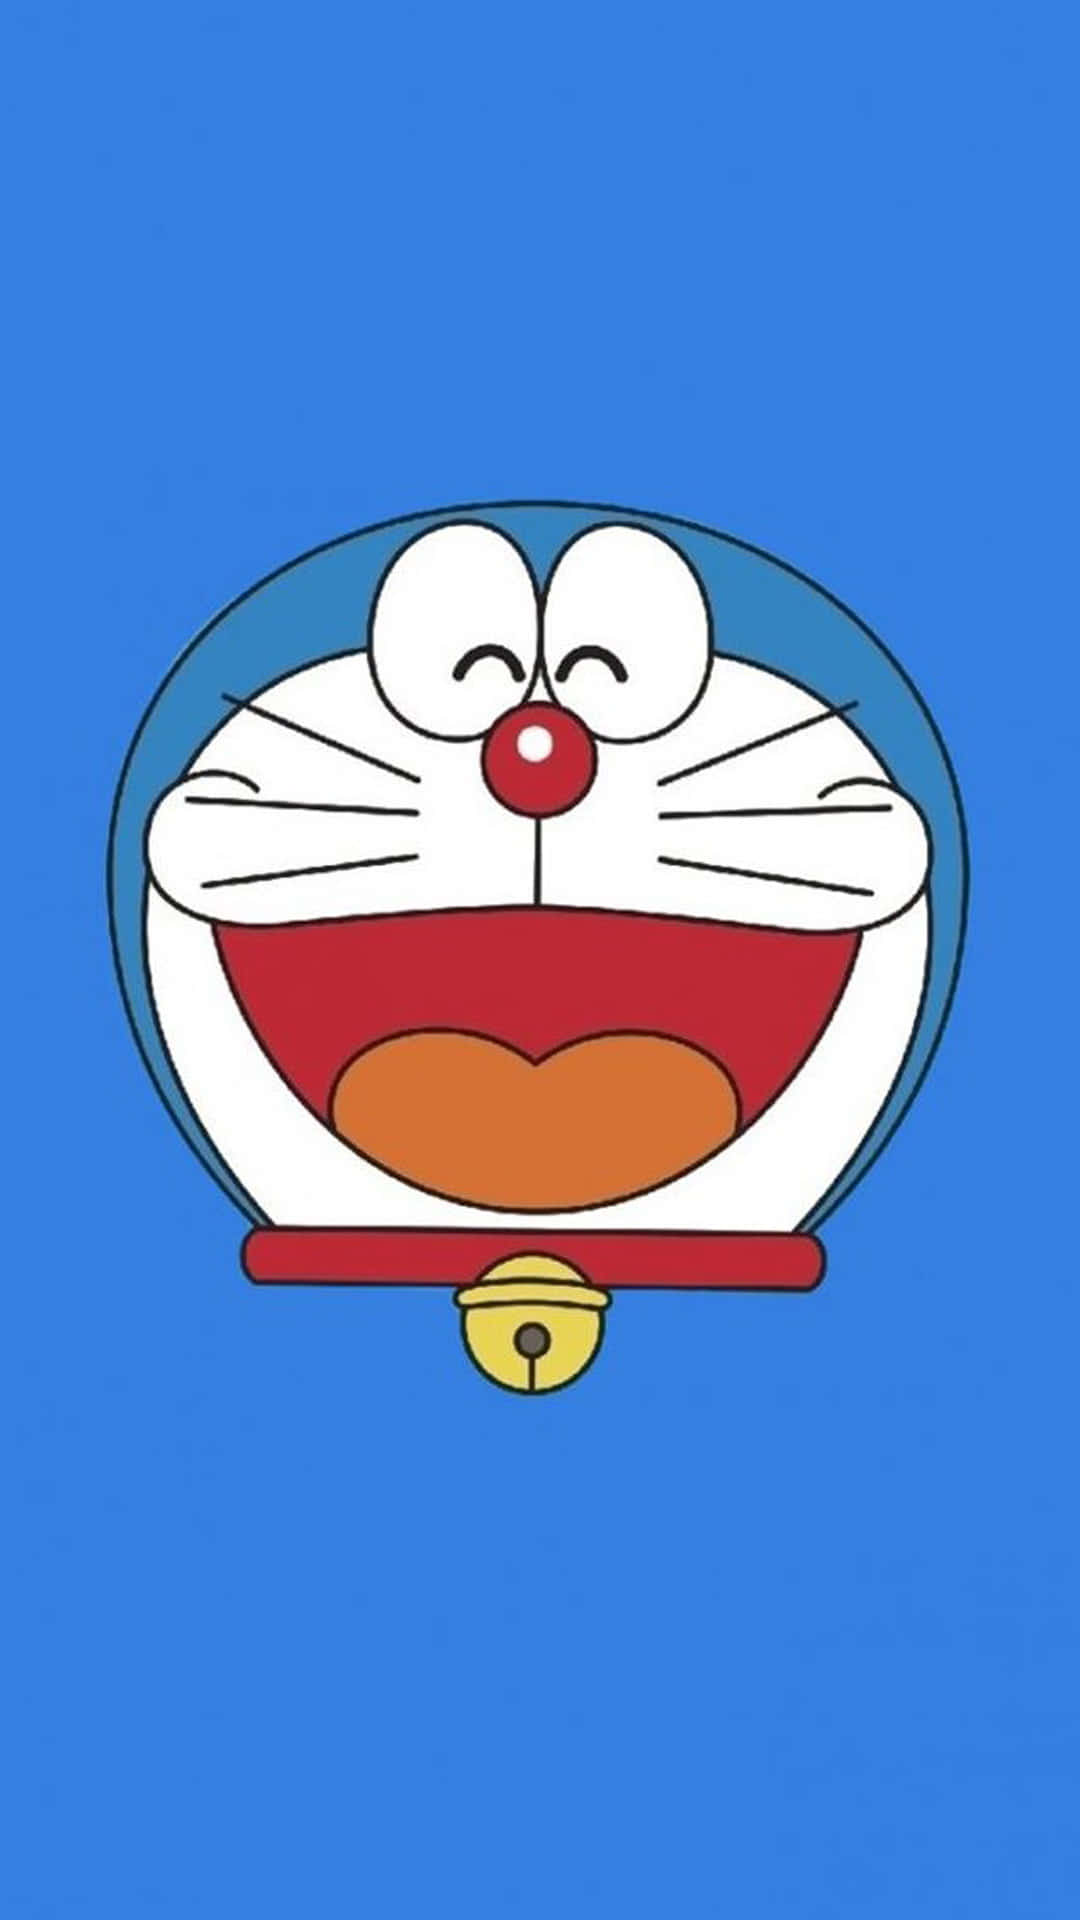 Doraemoncartoon Auf Blauem Hintergrund Wallpaper